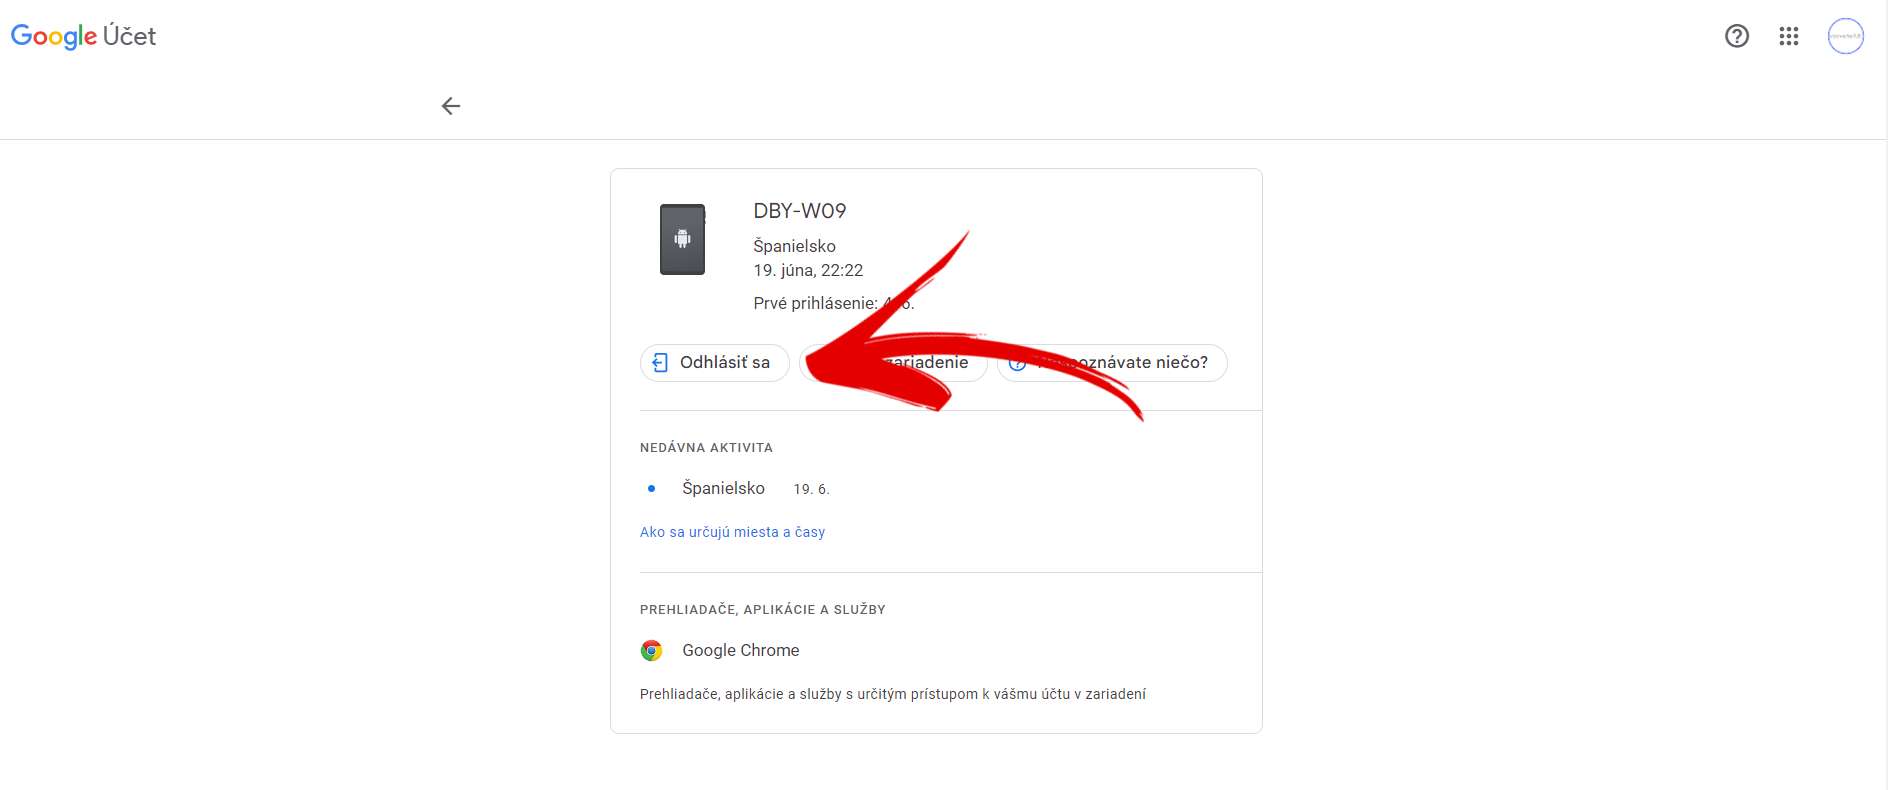 Gmail nastavenia zabezpecenie prepojene zariadenia s uctom cudzie zariadenie_4